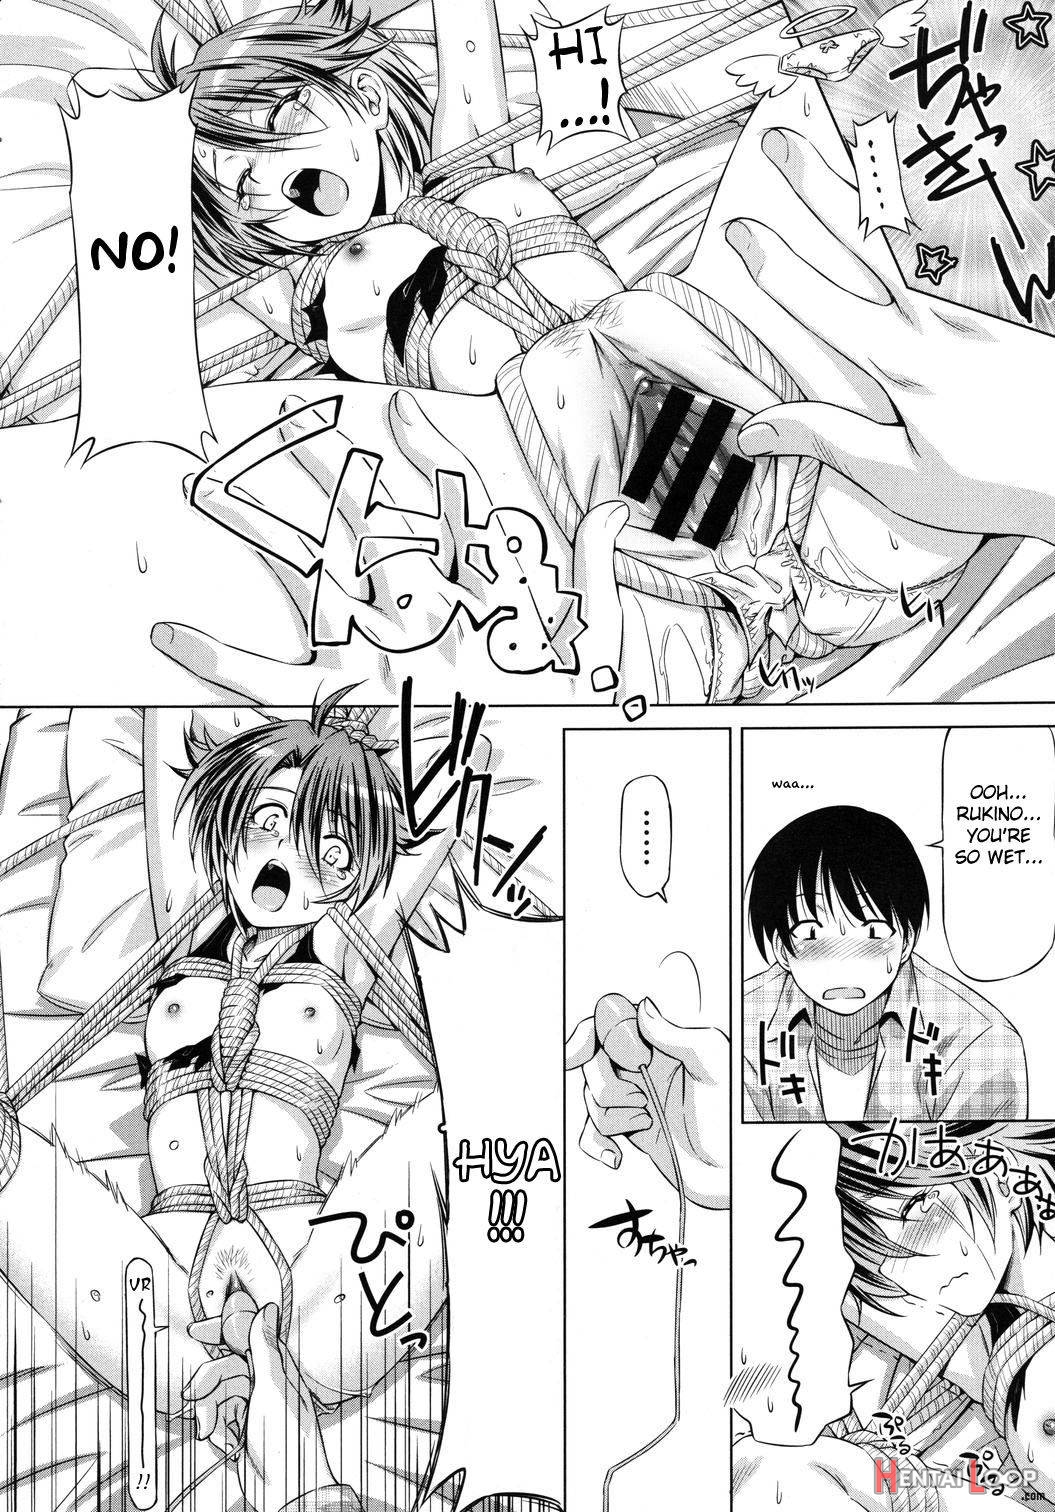 Rukino Versus Kei-niichan page 14